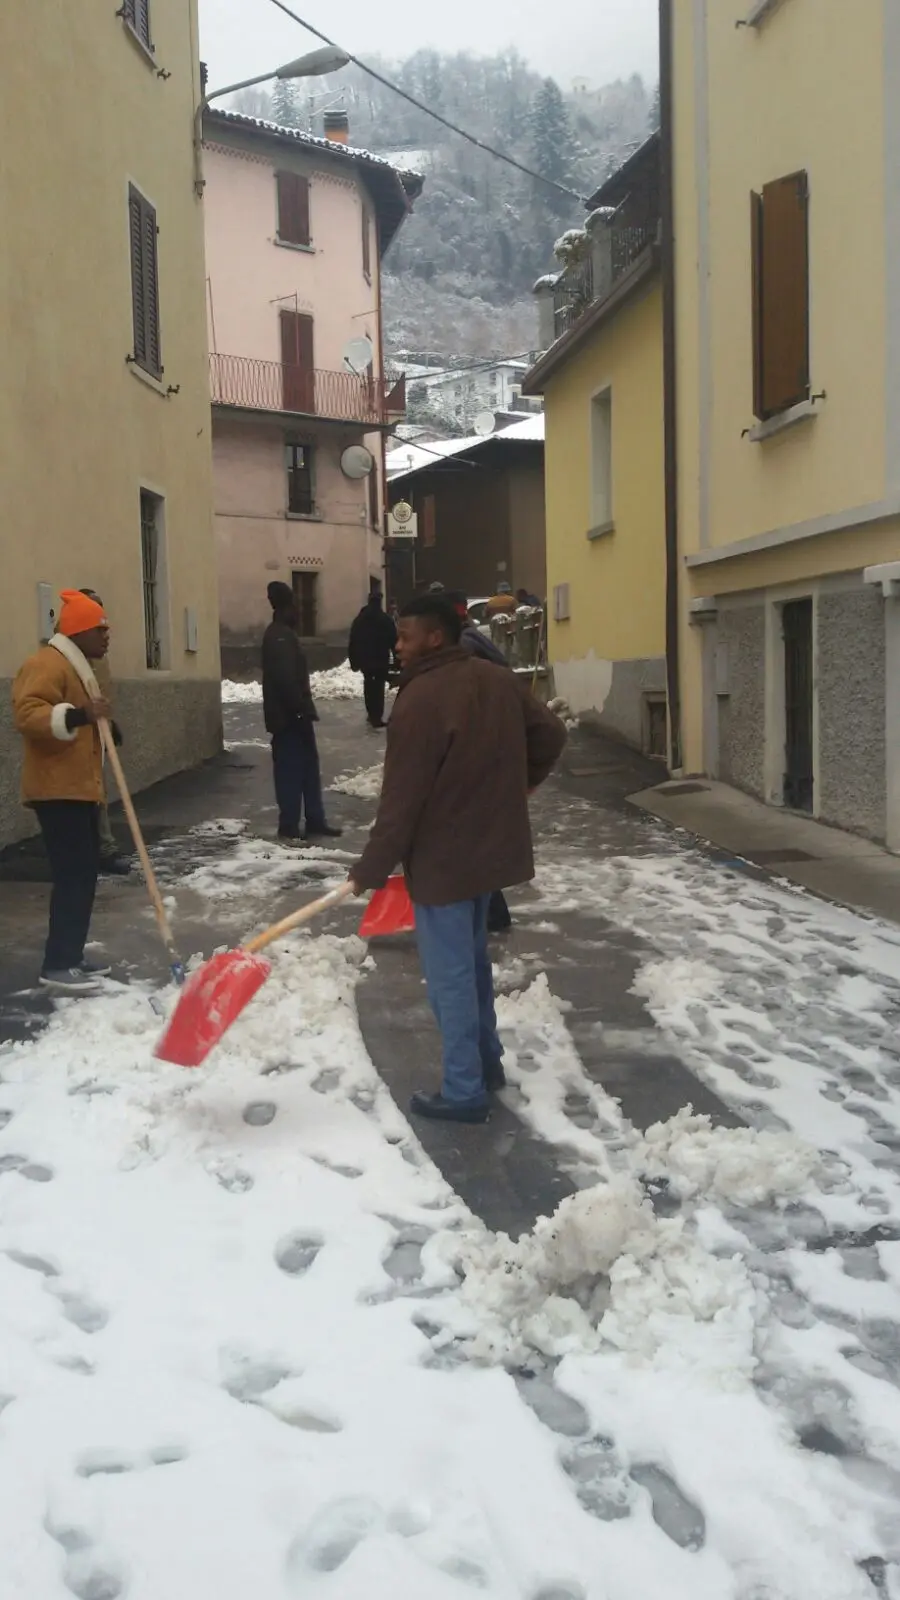 Profughi al lavoro ad Anfo per spalare la neve